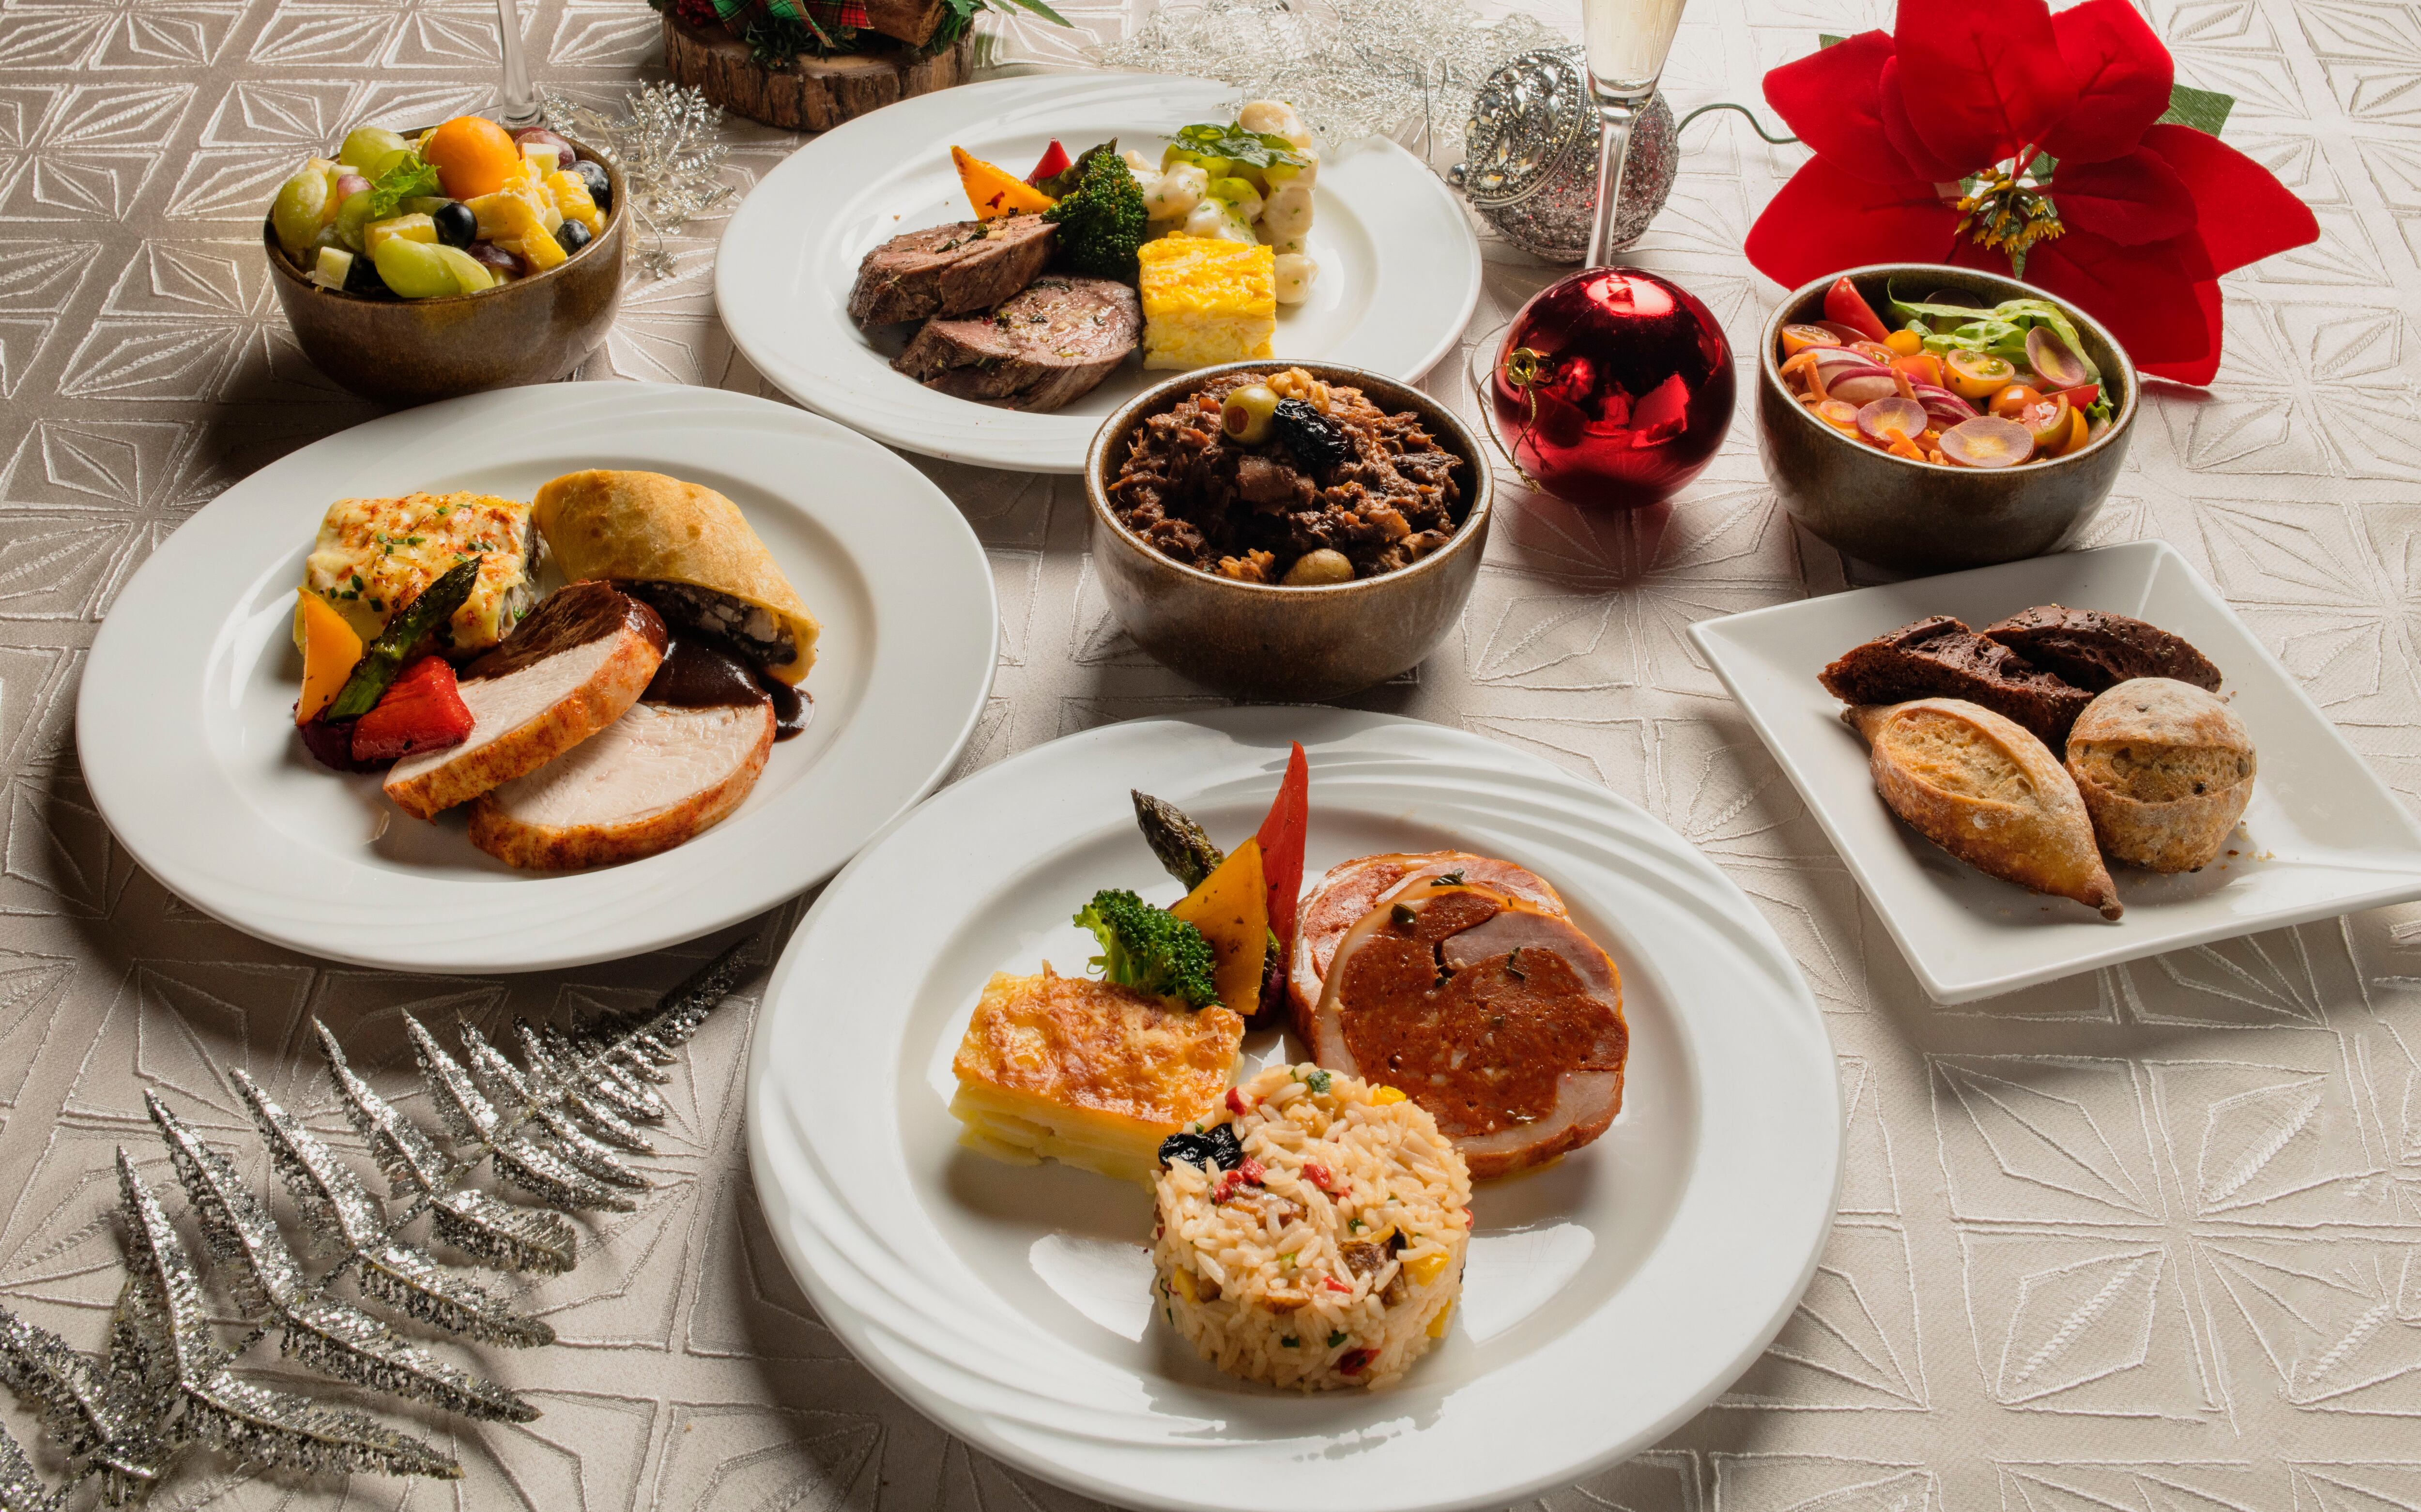 La cena buffet de Nochebuena del Hilton Colón estará disponible en sus restaurantes Café Colón, Vereda Tropical y Portofino.